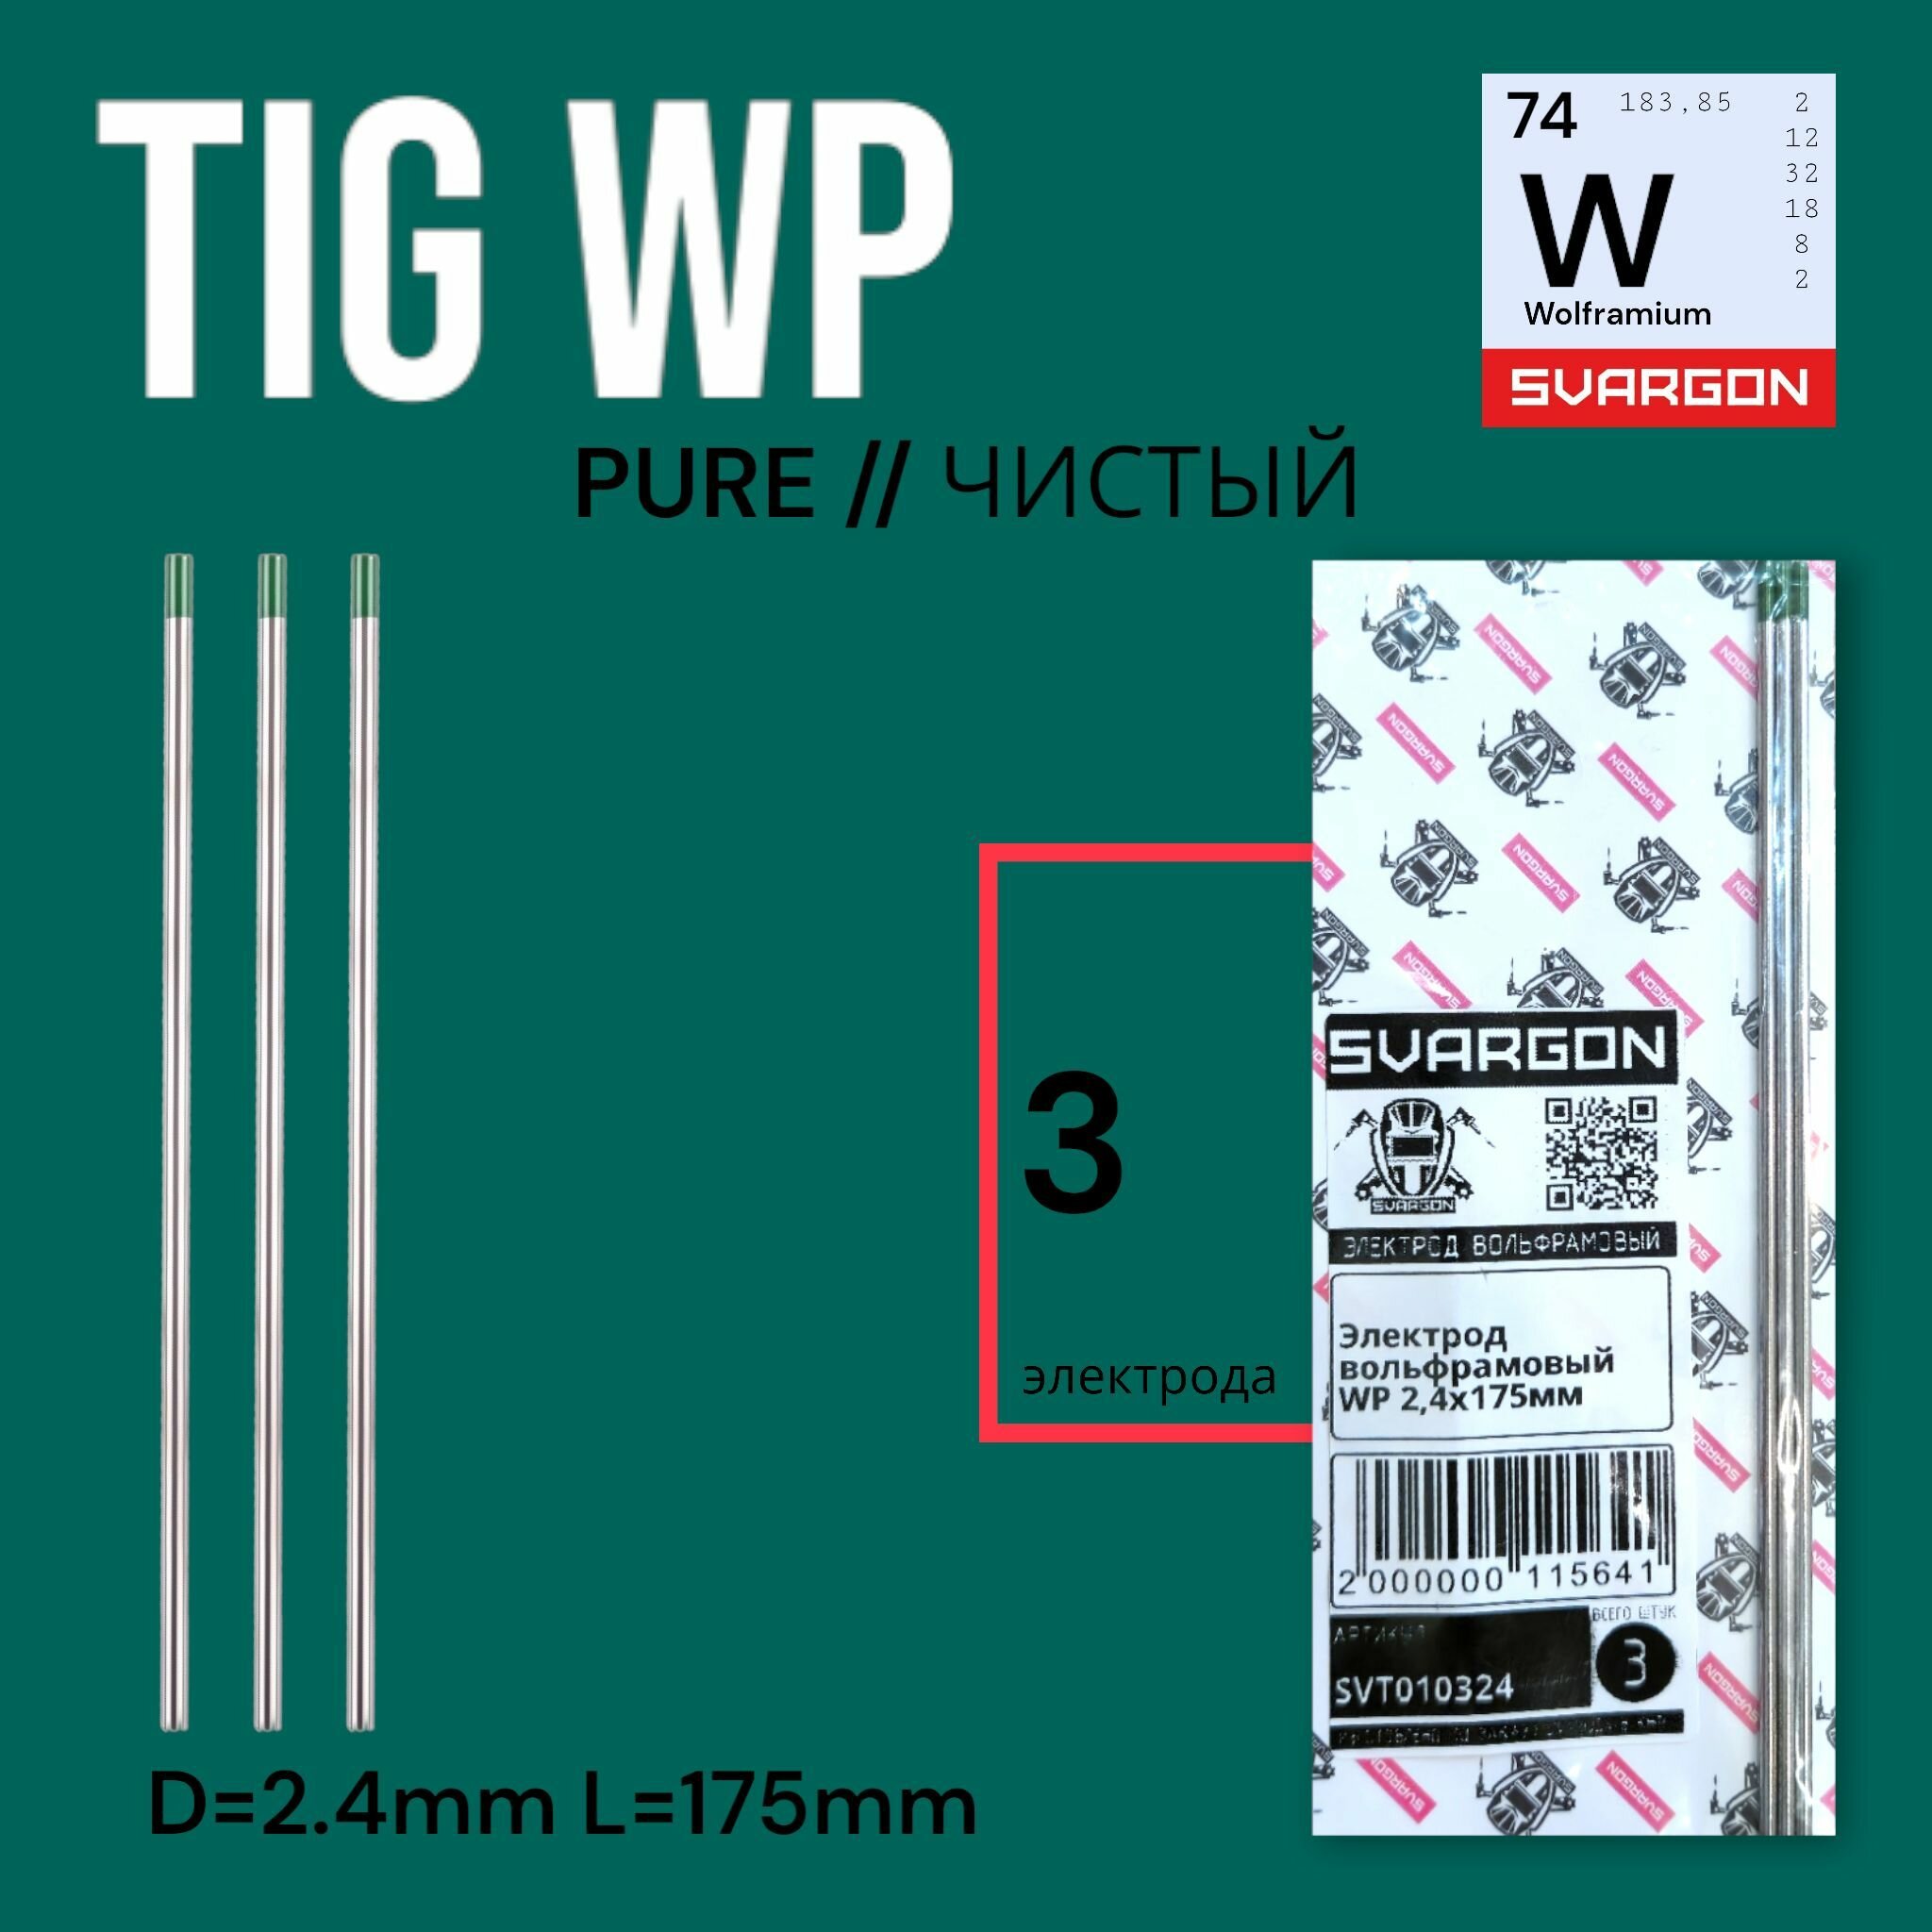 Вольфрамовые сварочные электроды для аргонодуговой сварки SVARGON TIG WP D2.4мм 3шт.